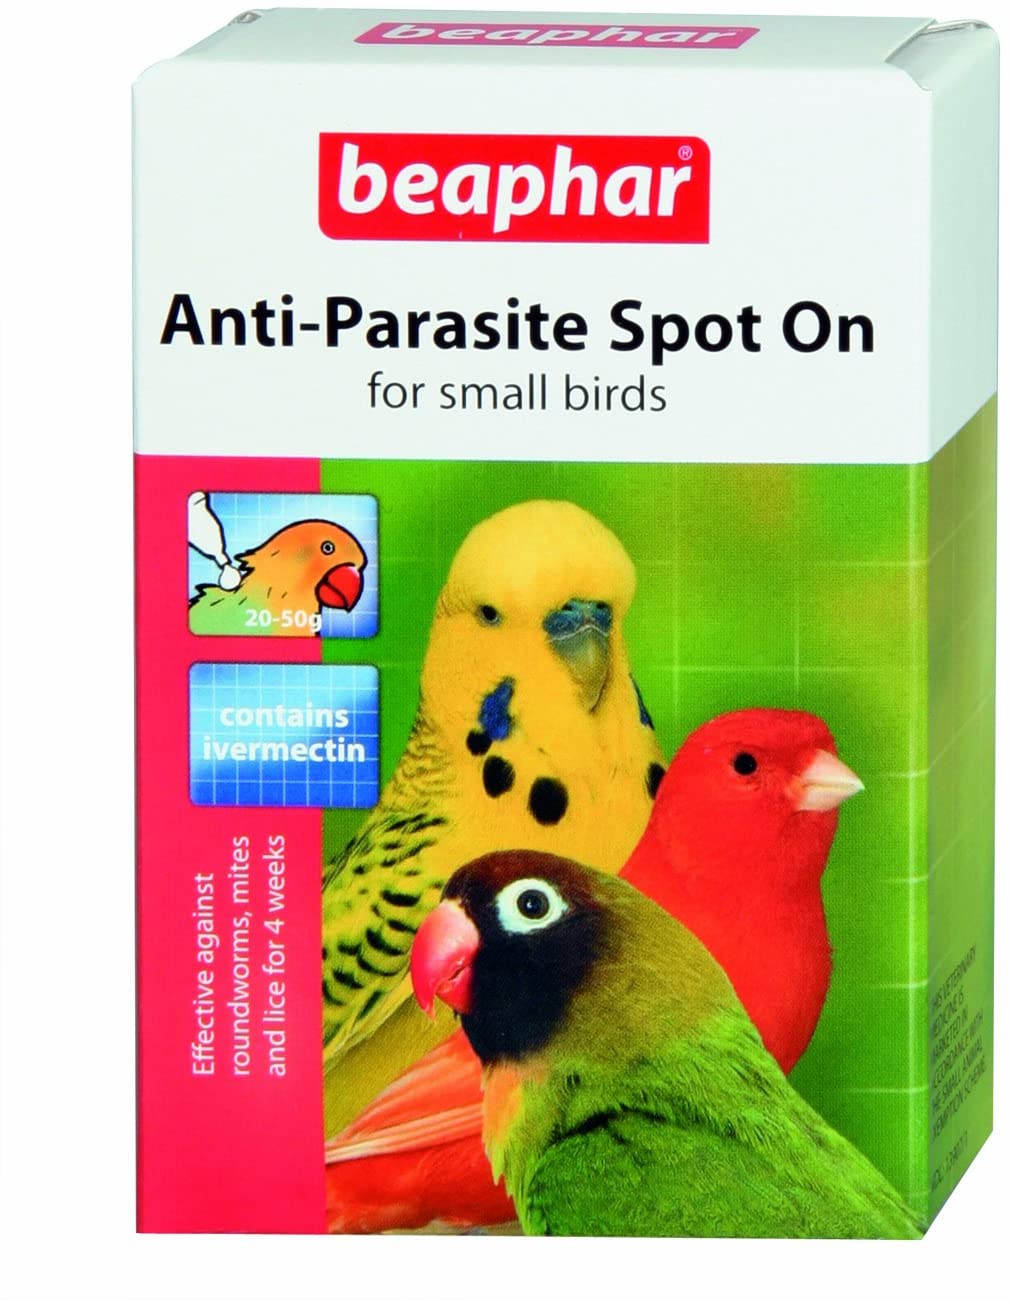 Beaphar Anti-Parasite Spot-on for Small Birds